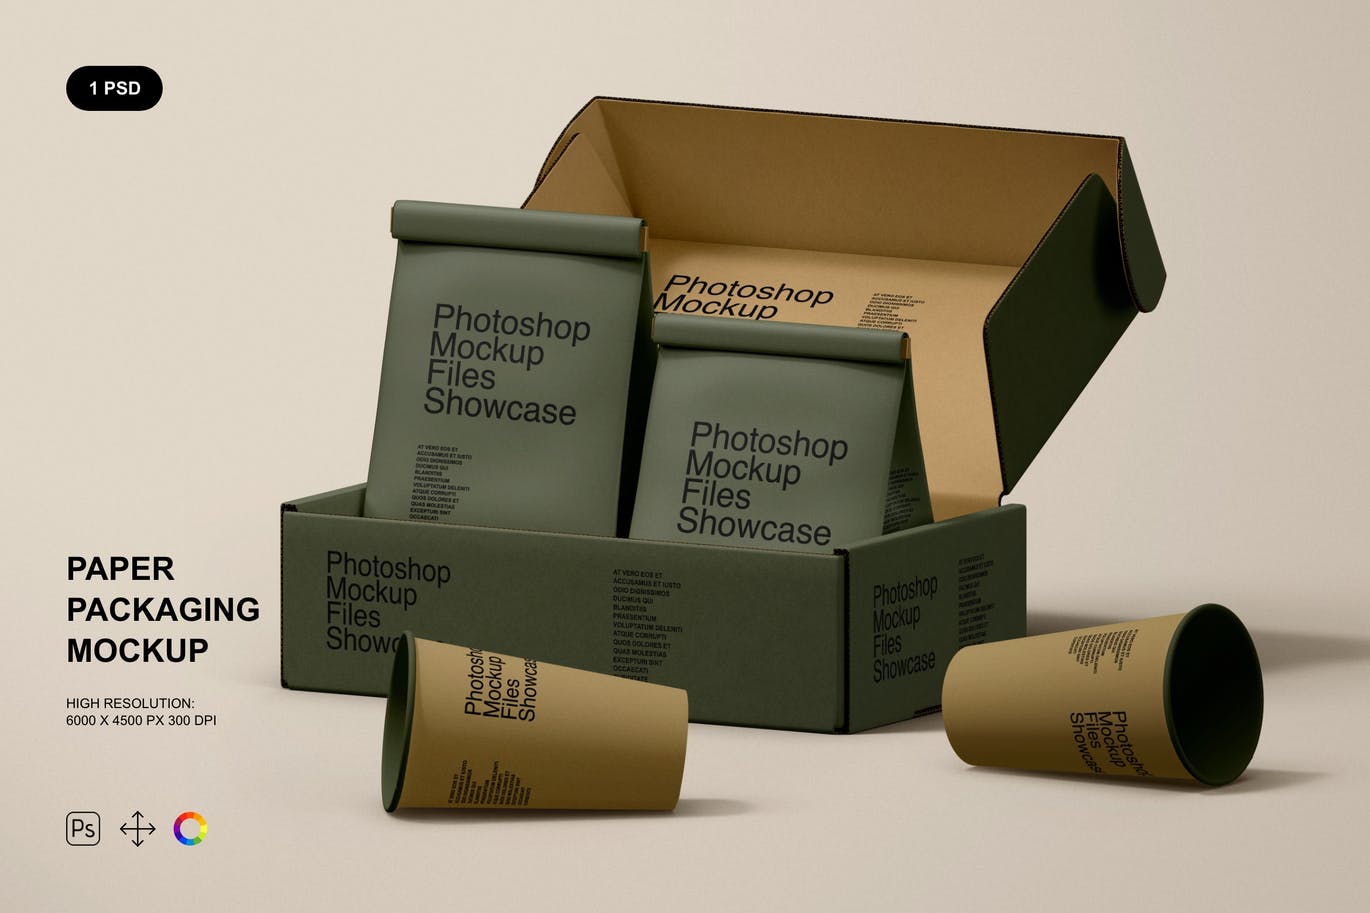 咖啡纸盒/纸袋/纸杯品牌包装设计样机 (PSD)